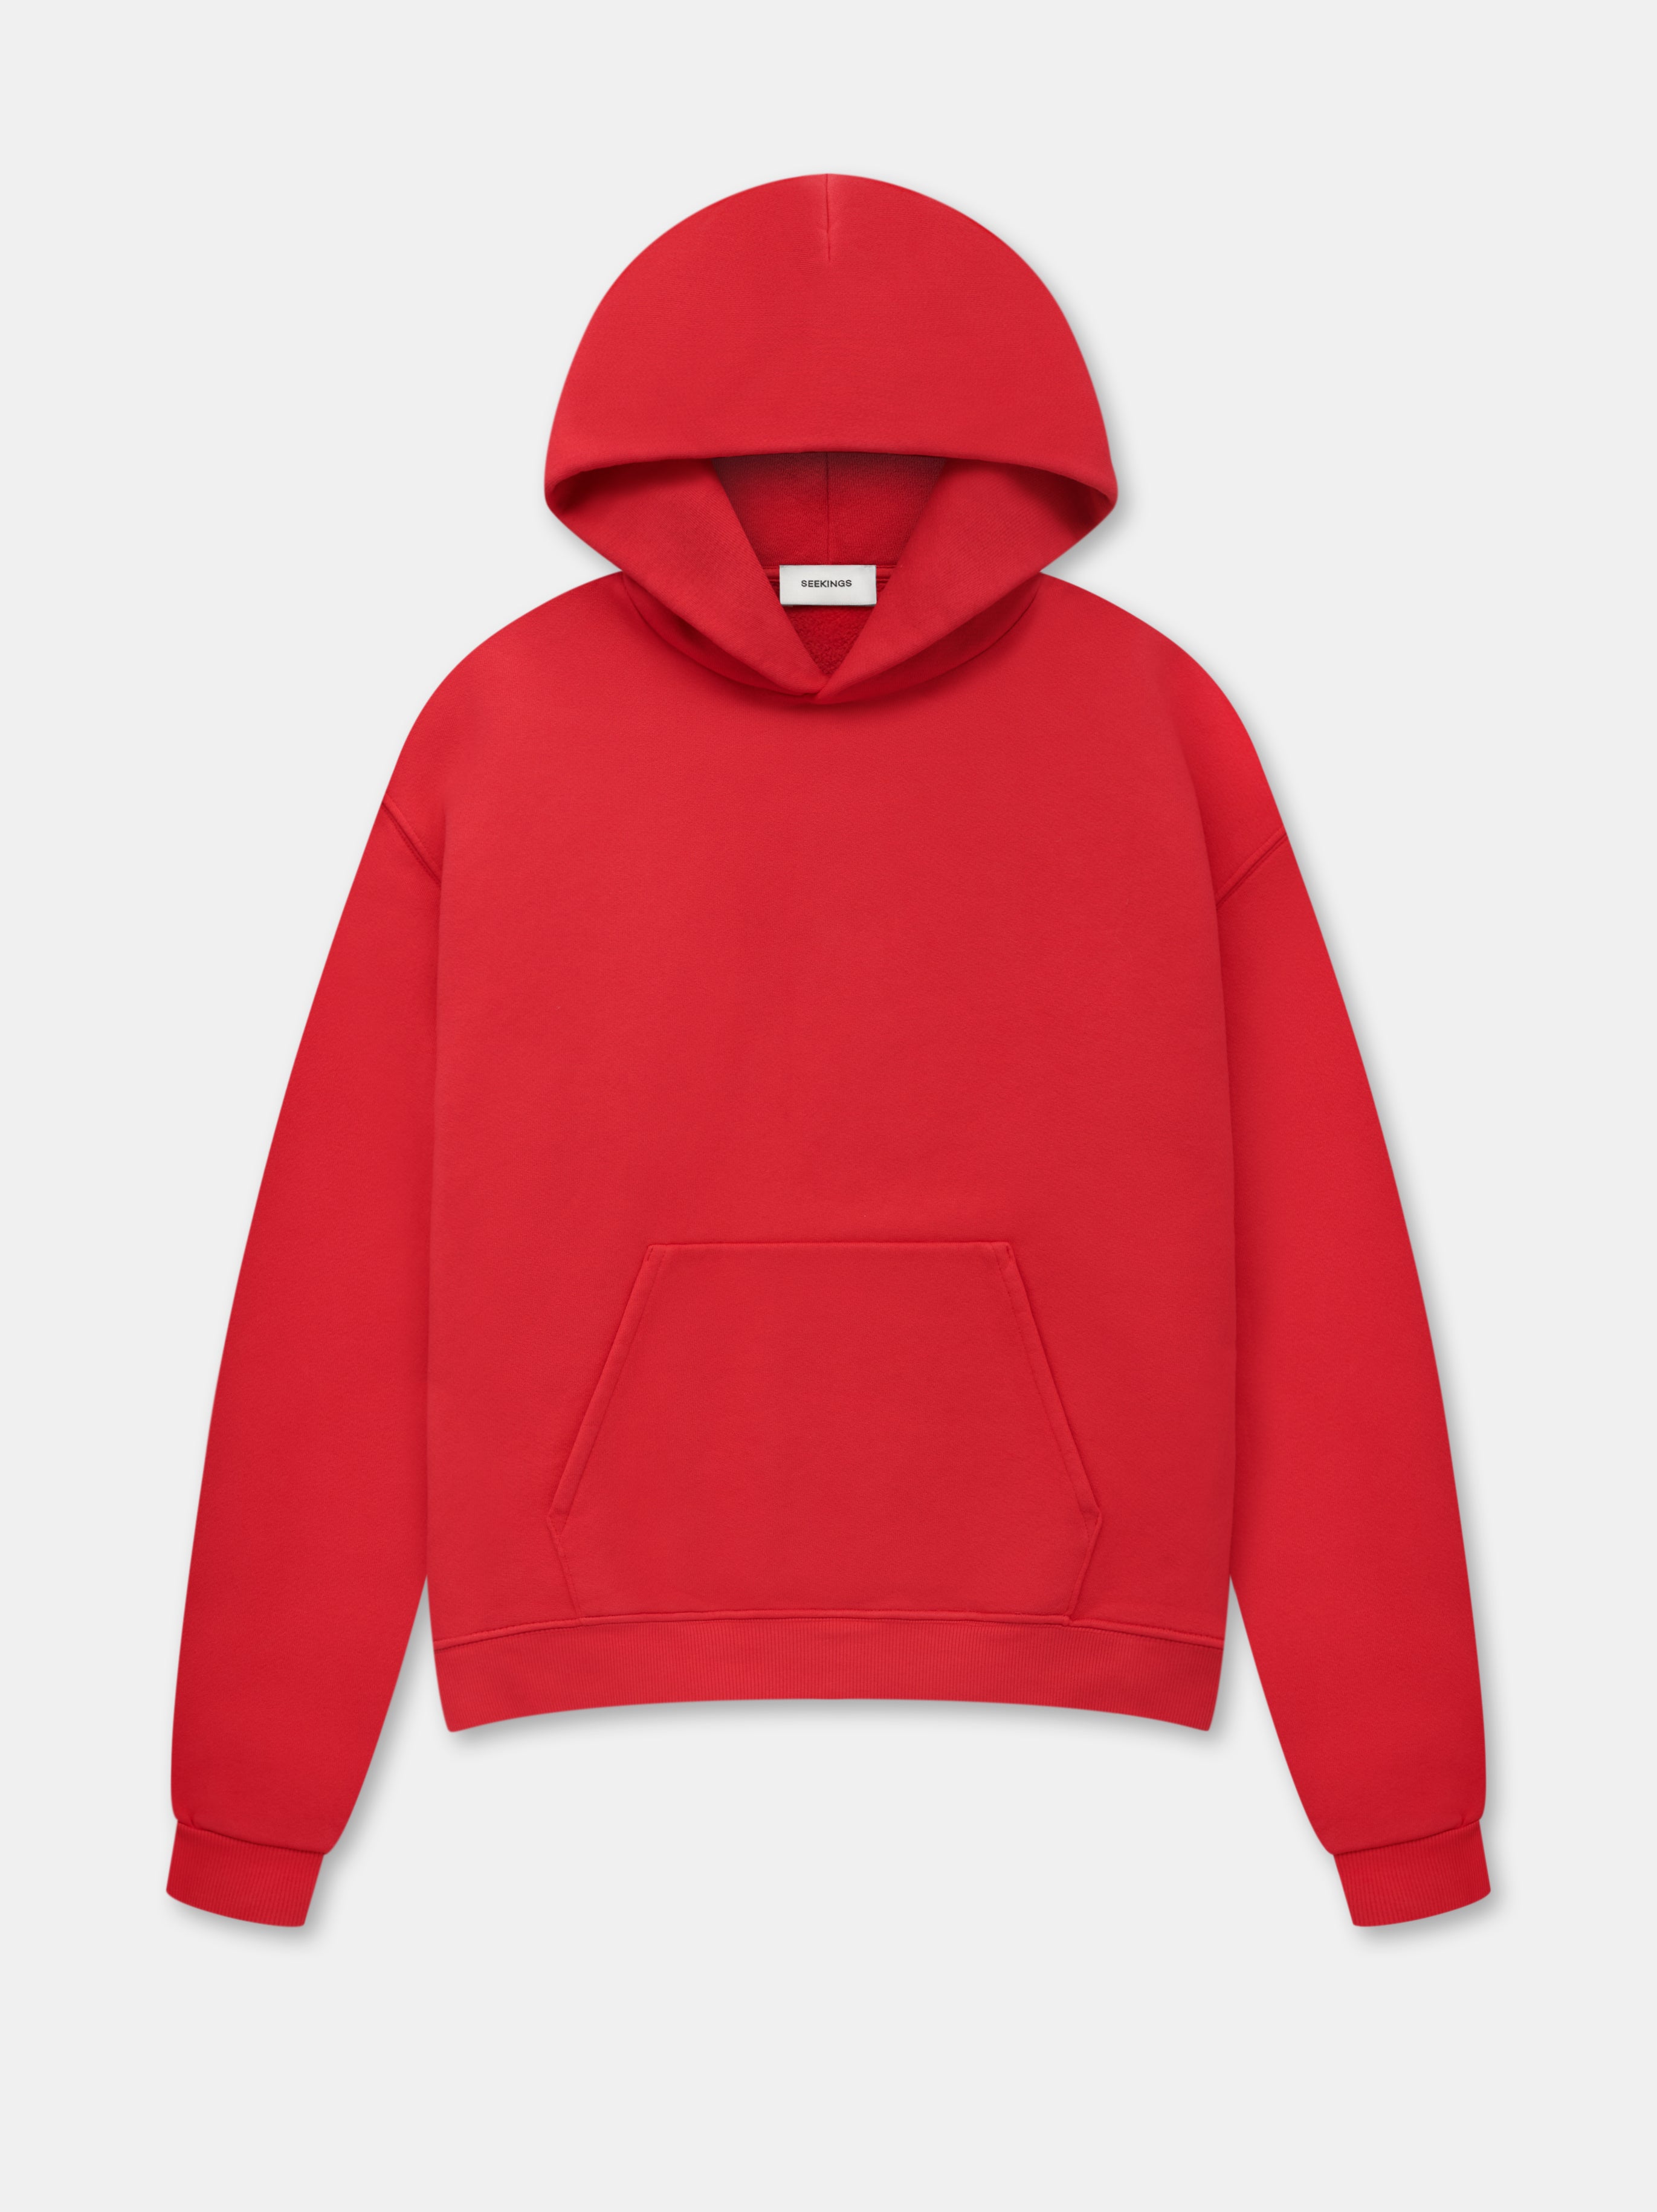 seekings hooded sweatshirt in california red